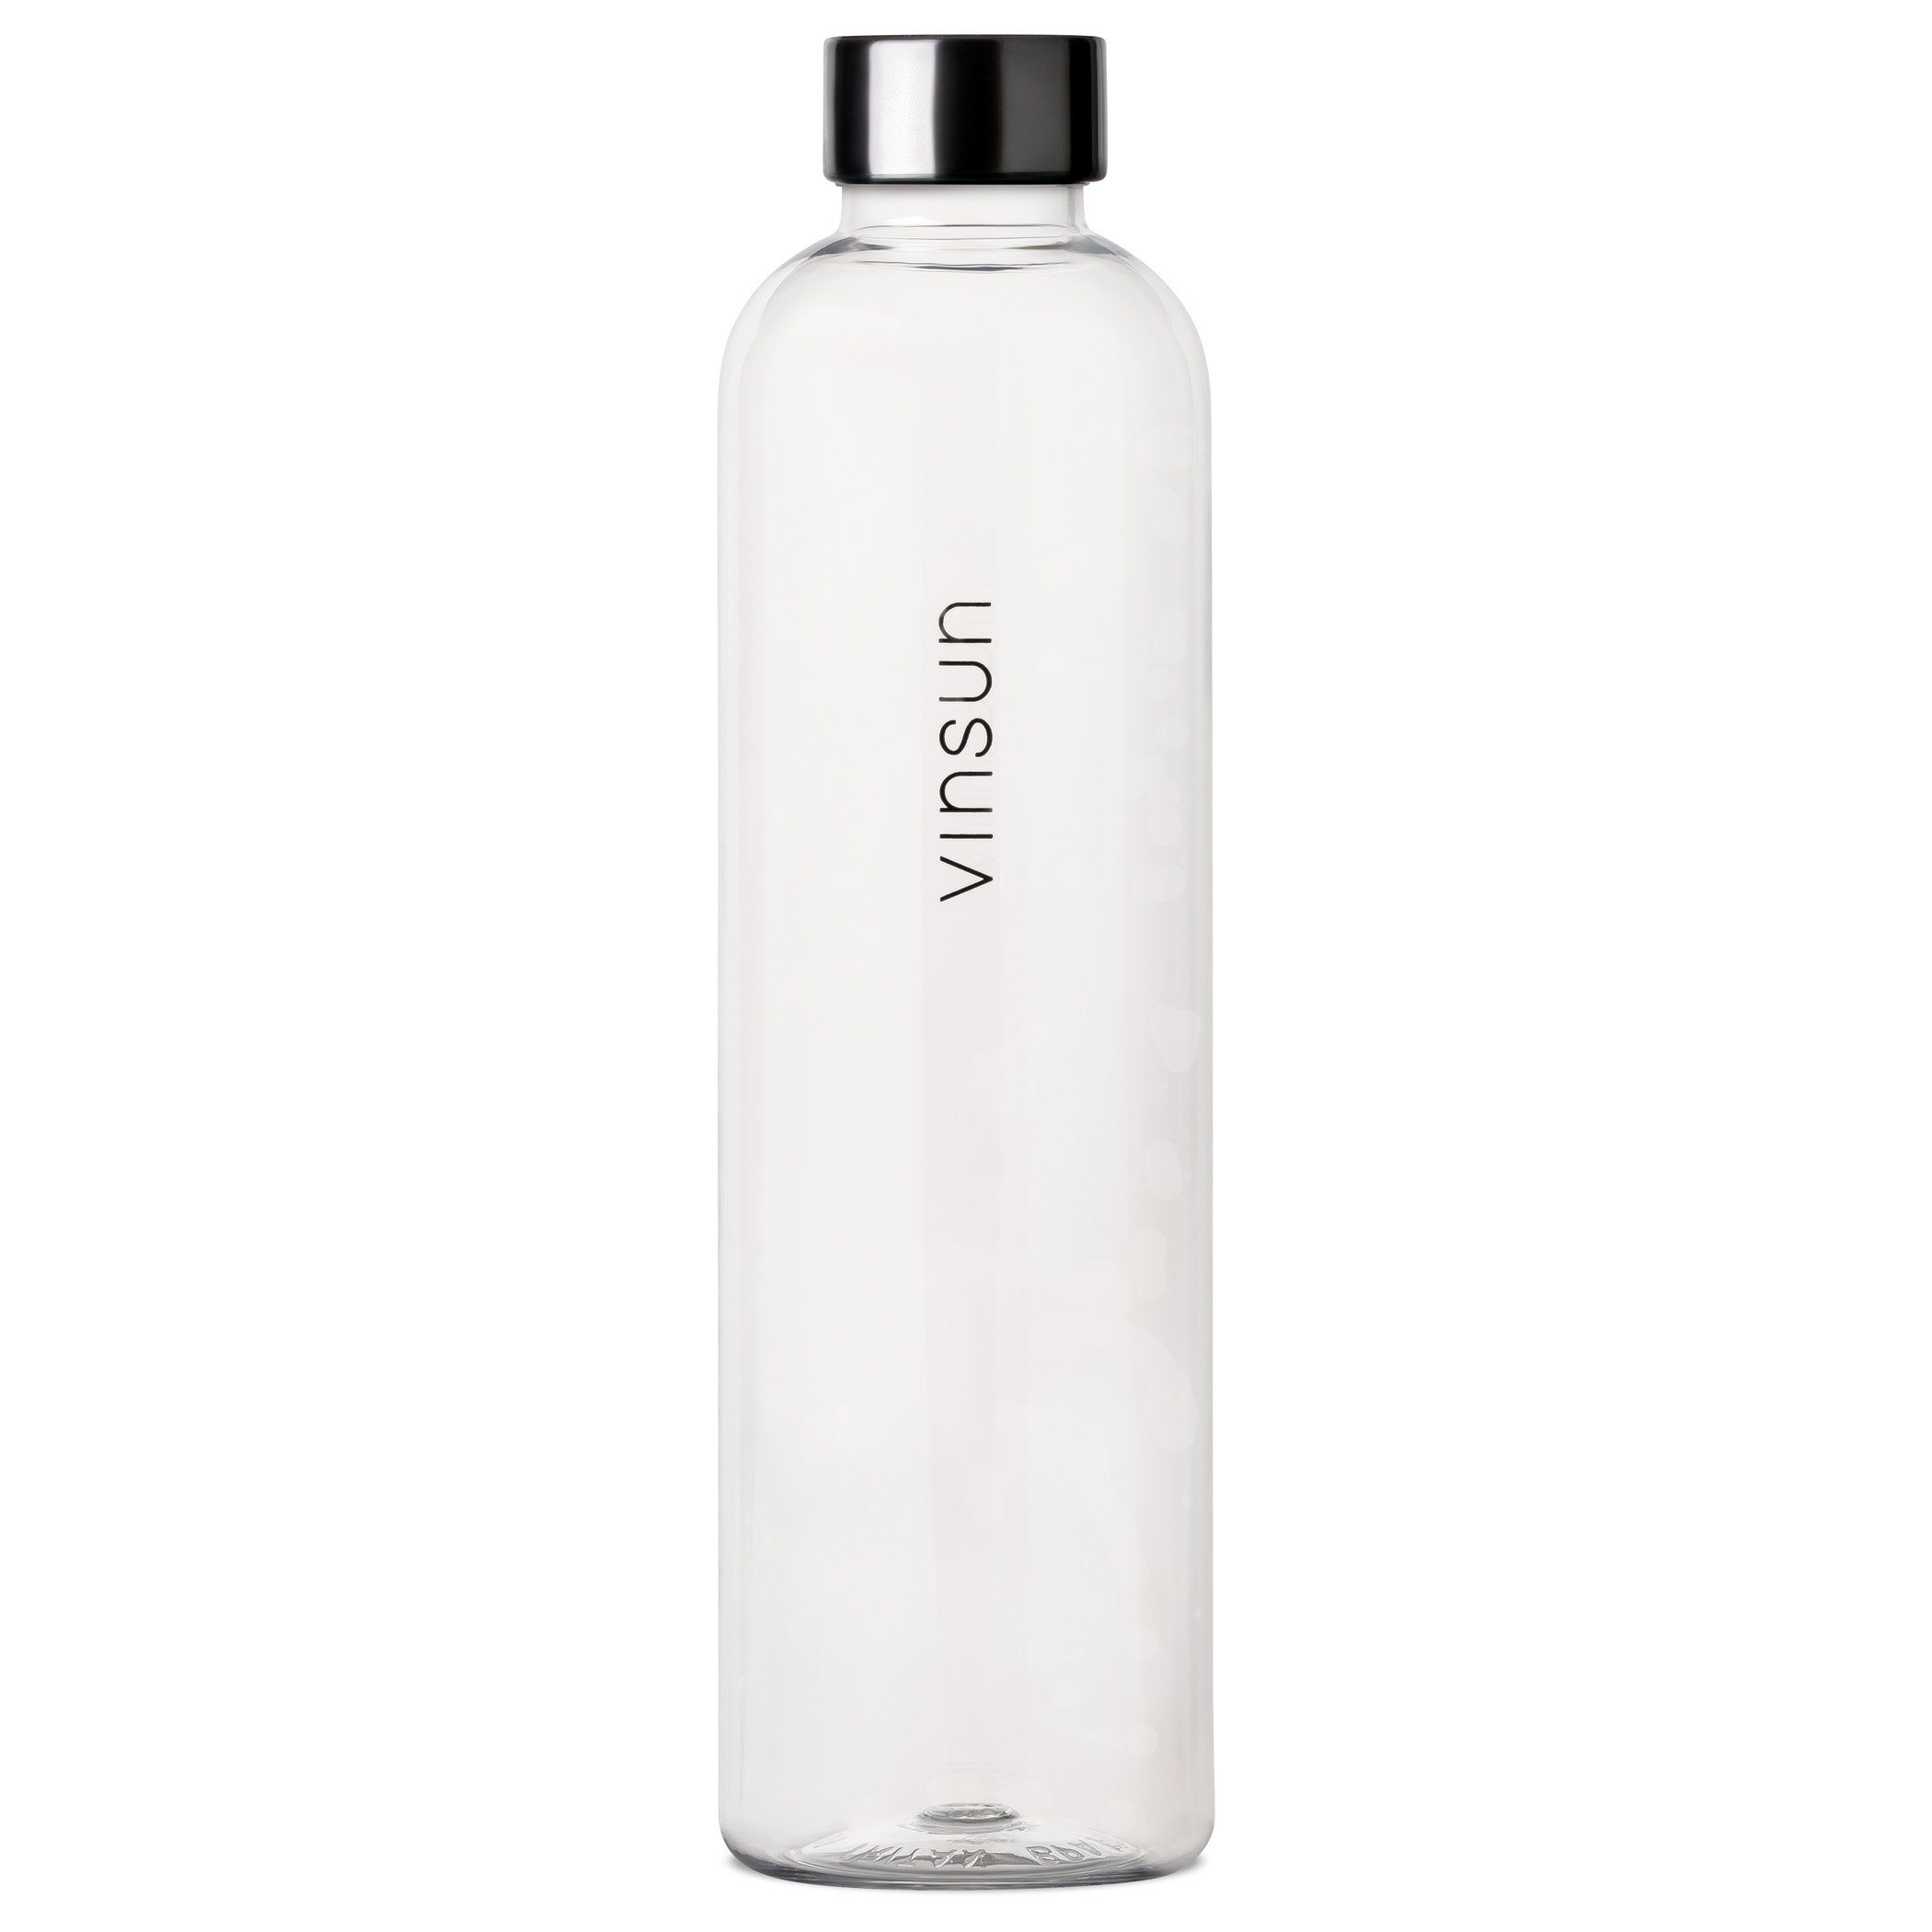 Vinsun Trinkflasche Trinkflasche 1L - Kohlensäure geeignet, auslaufsicher - Wasserflasche, BPA frei, bruchsicher, Geruchs- und Geschmacksneutral, auslaufsicher Transparent